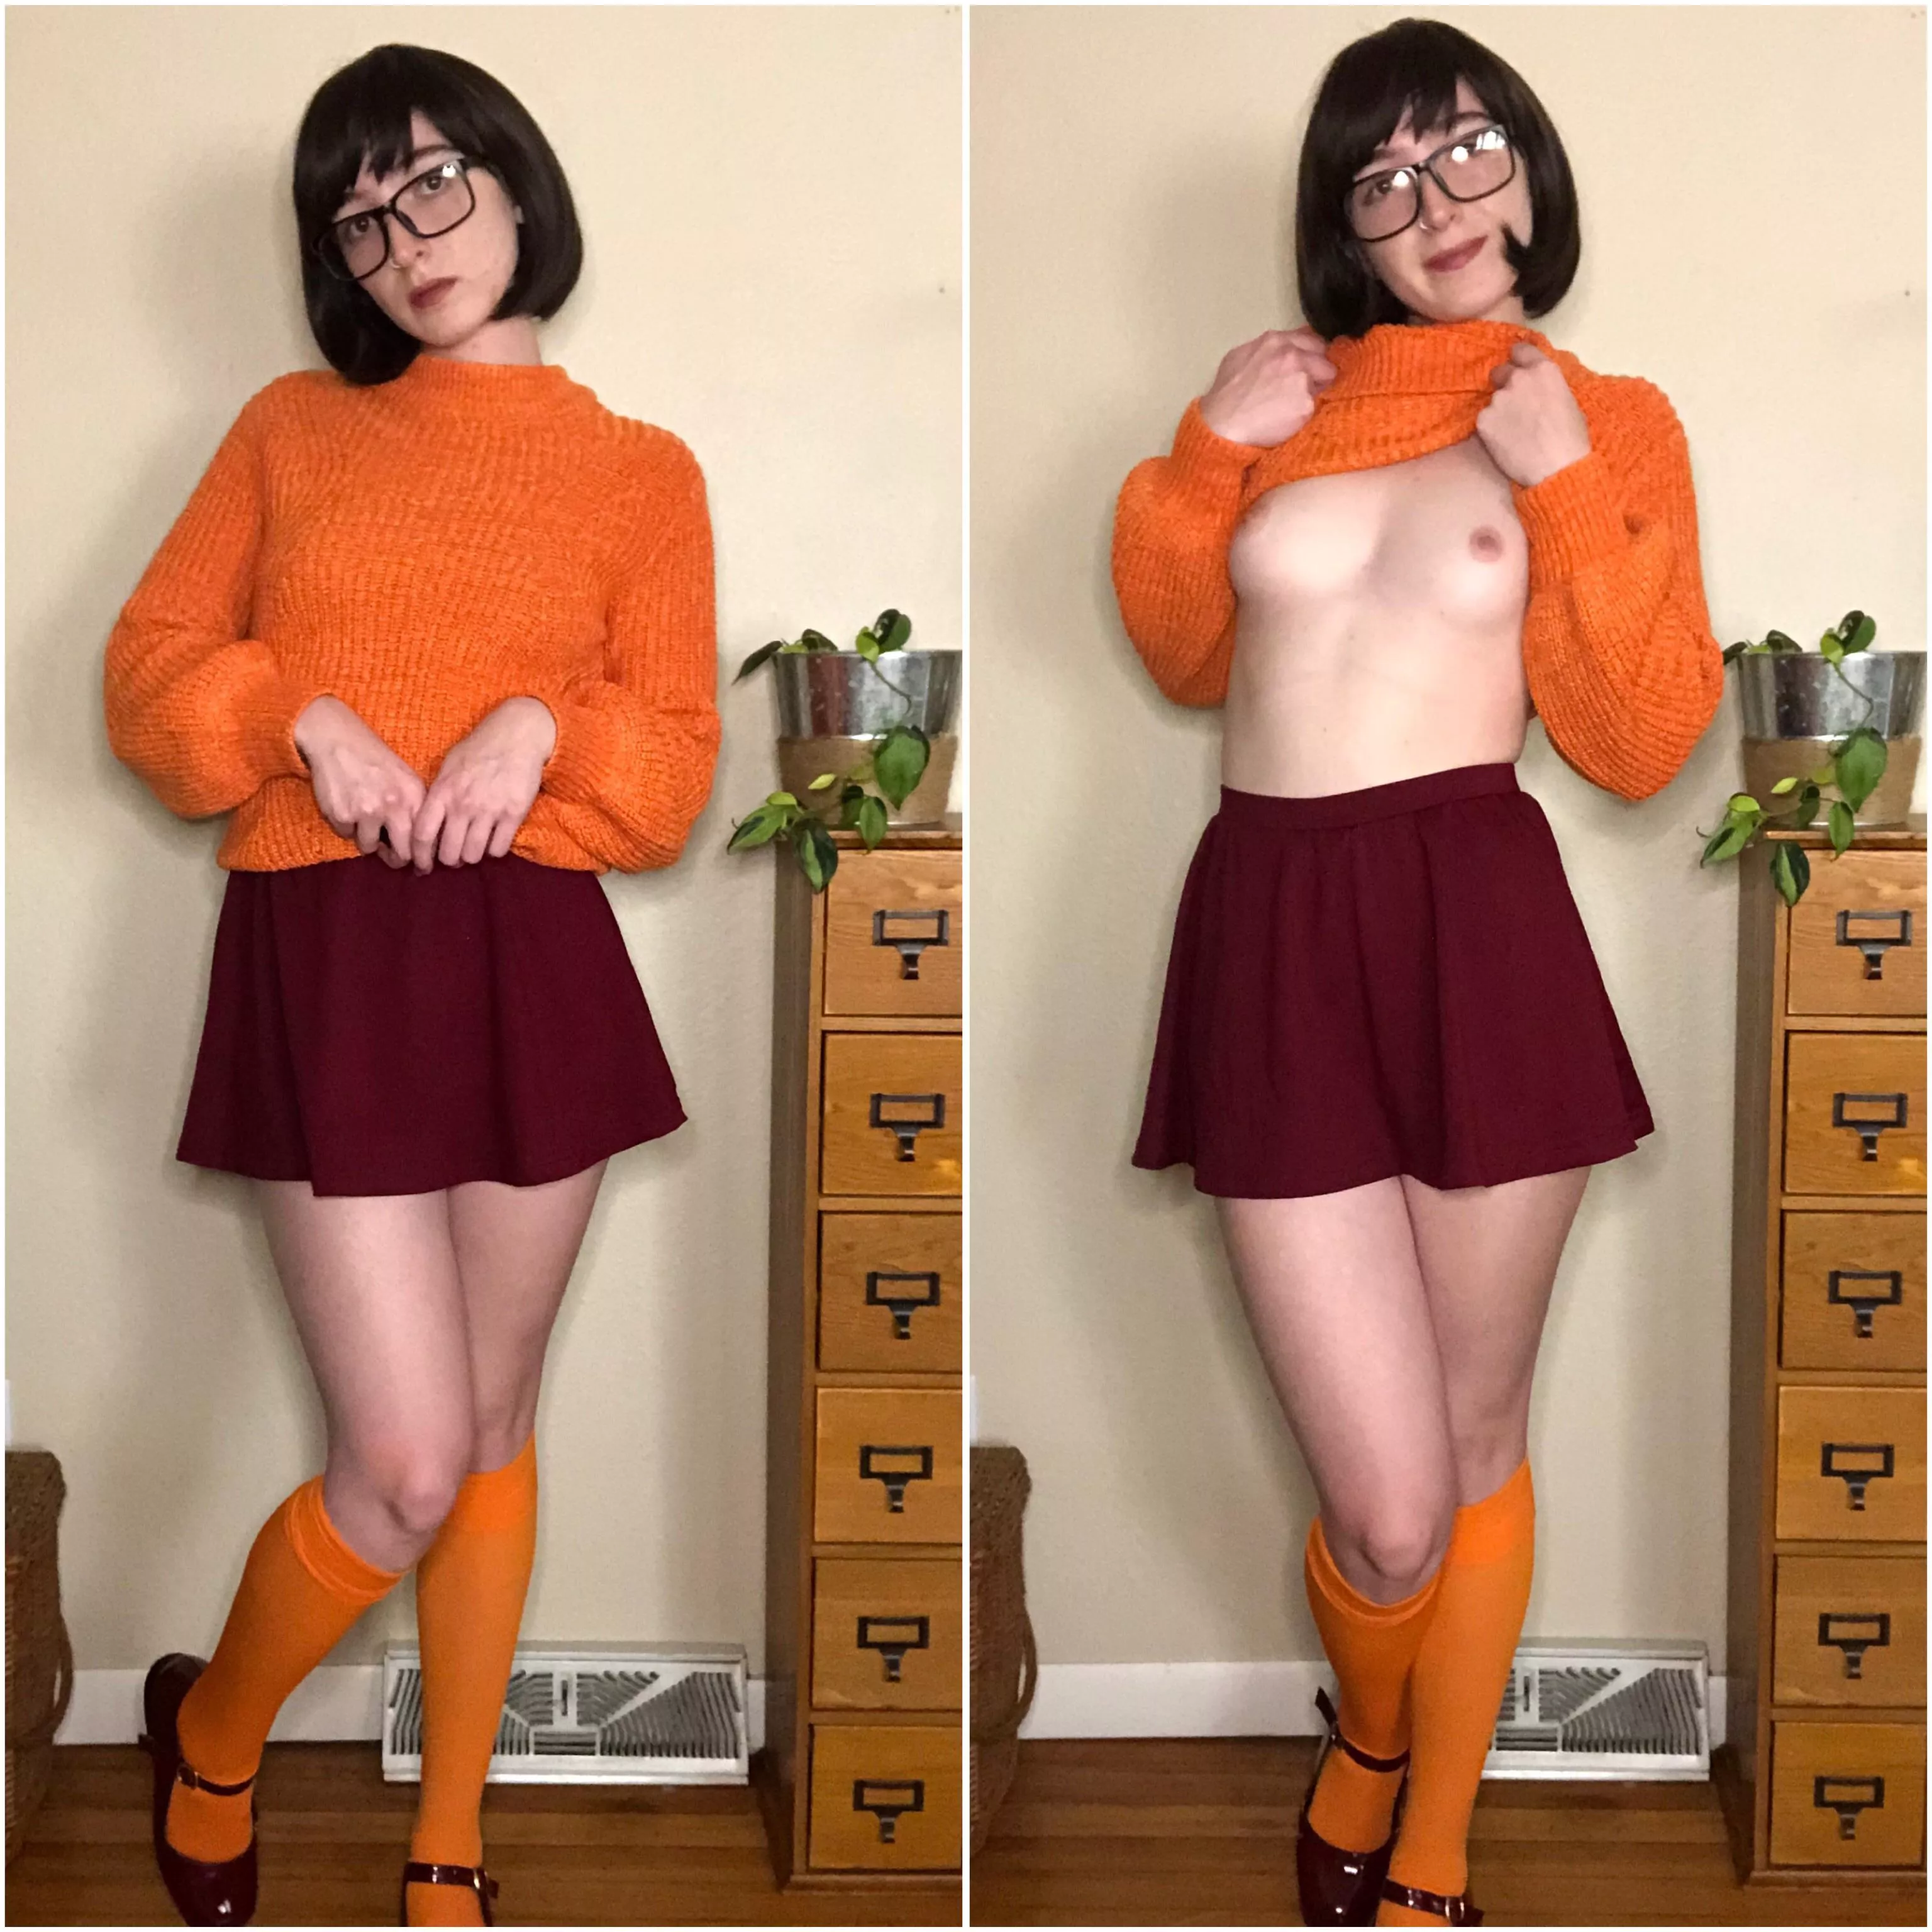 Jinkies! Velma by pale_stale_abigale